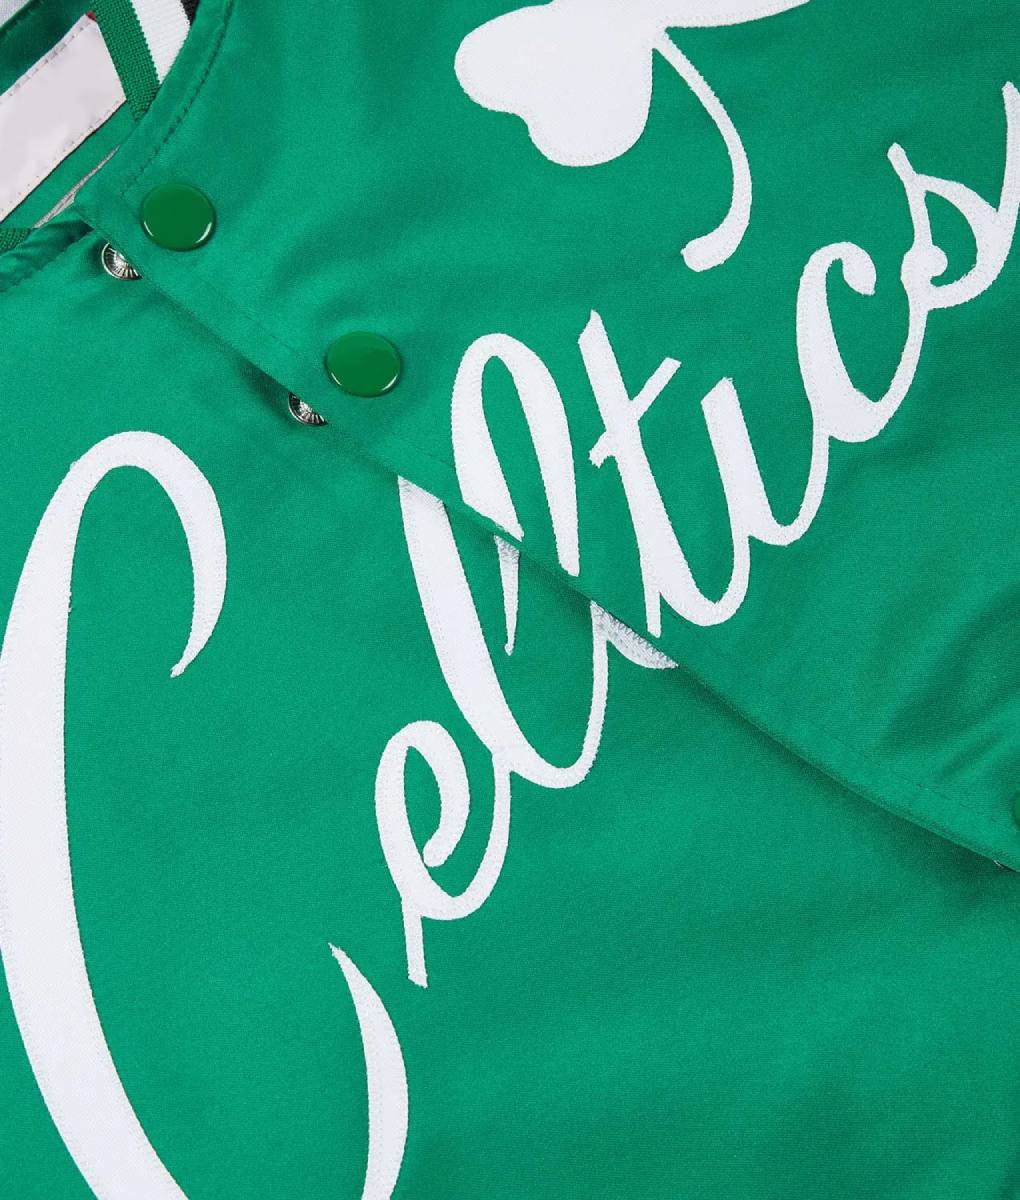 Celtics Starter Boston Satin Jacket